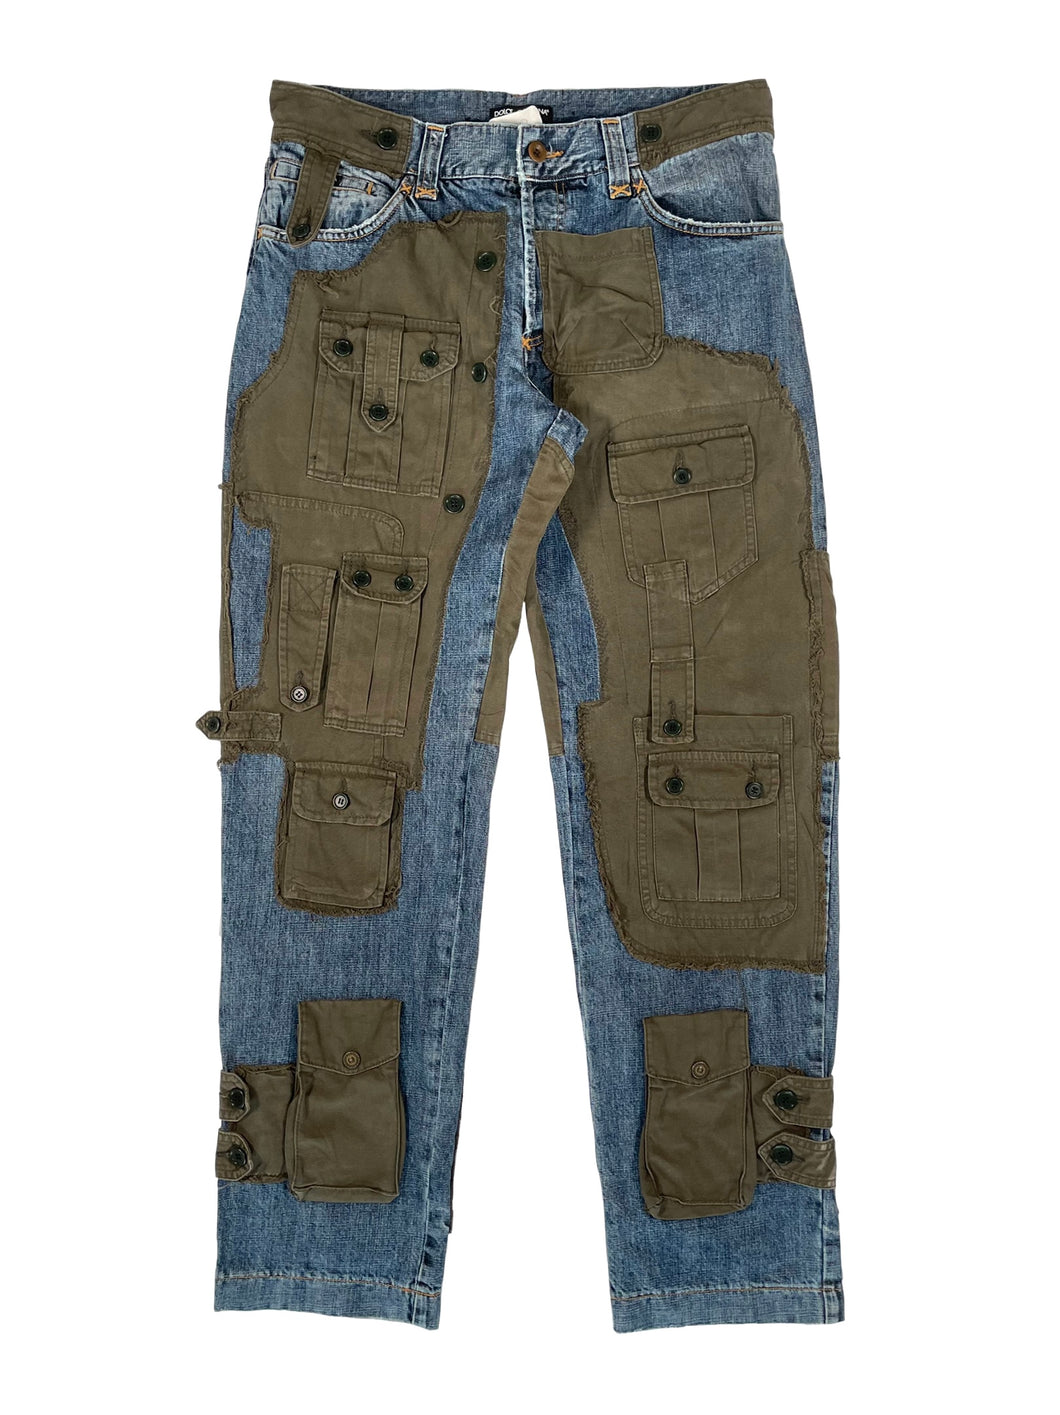 AW2005 Dolce & Gabbana hybrid patchwork cargo jeans